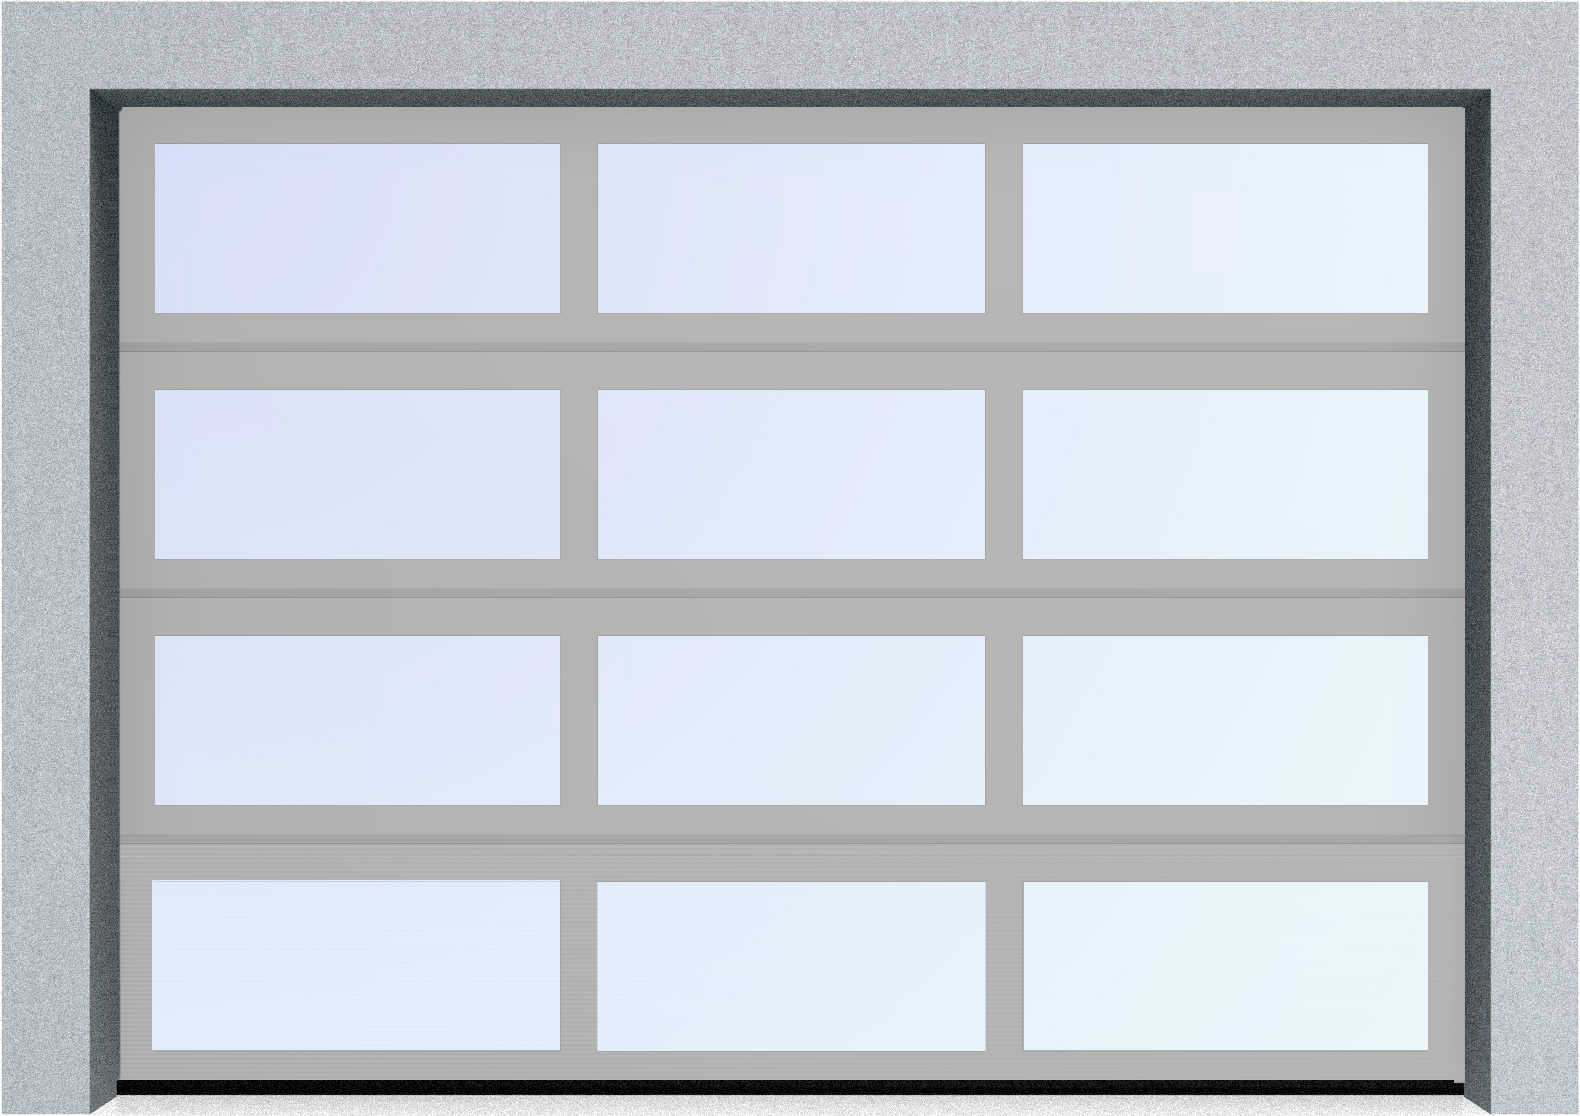  Секционные панорамные ворота серии AluTrend (АЛП) 2875х2125 нижняя панель стандартные цвета, фото 9 